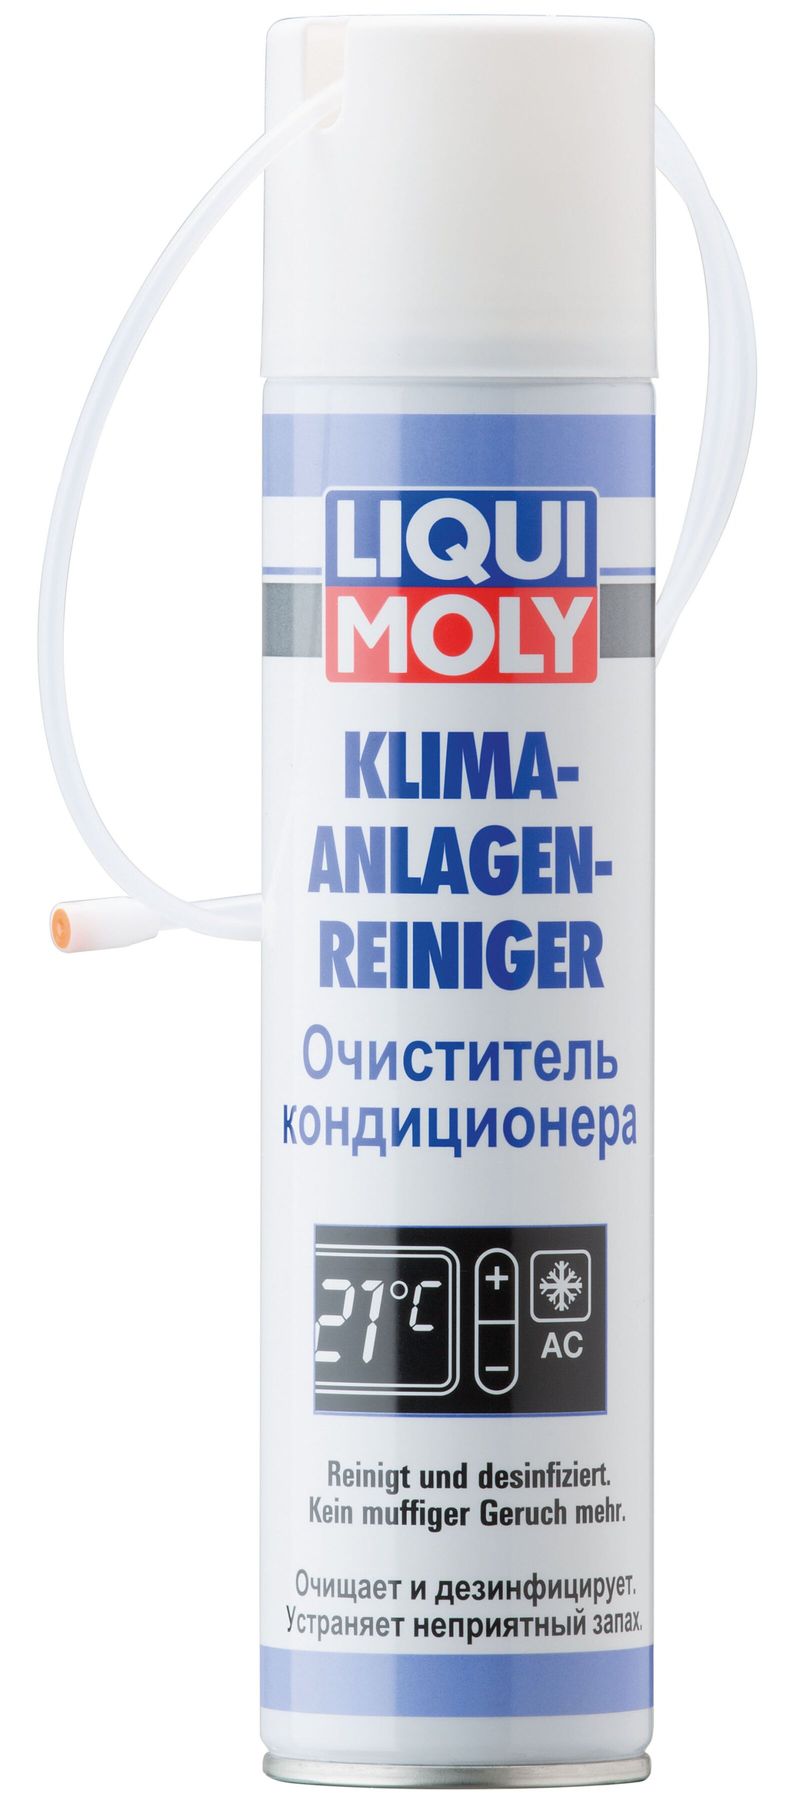 Liqui Moly Klima-Anlagen-Reiniger, 250 мл (4087)